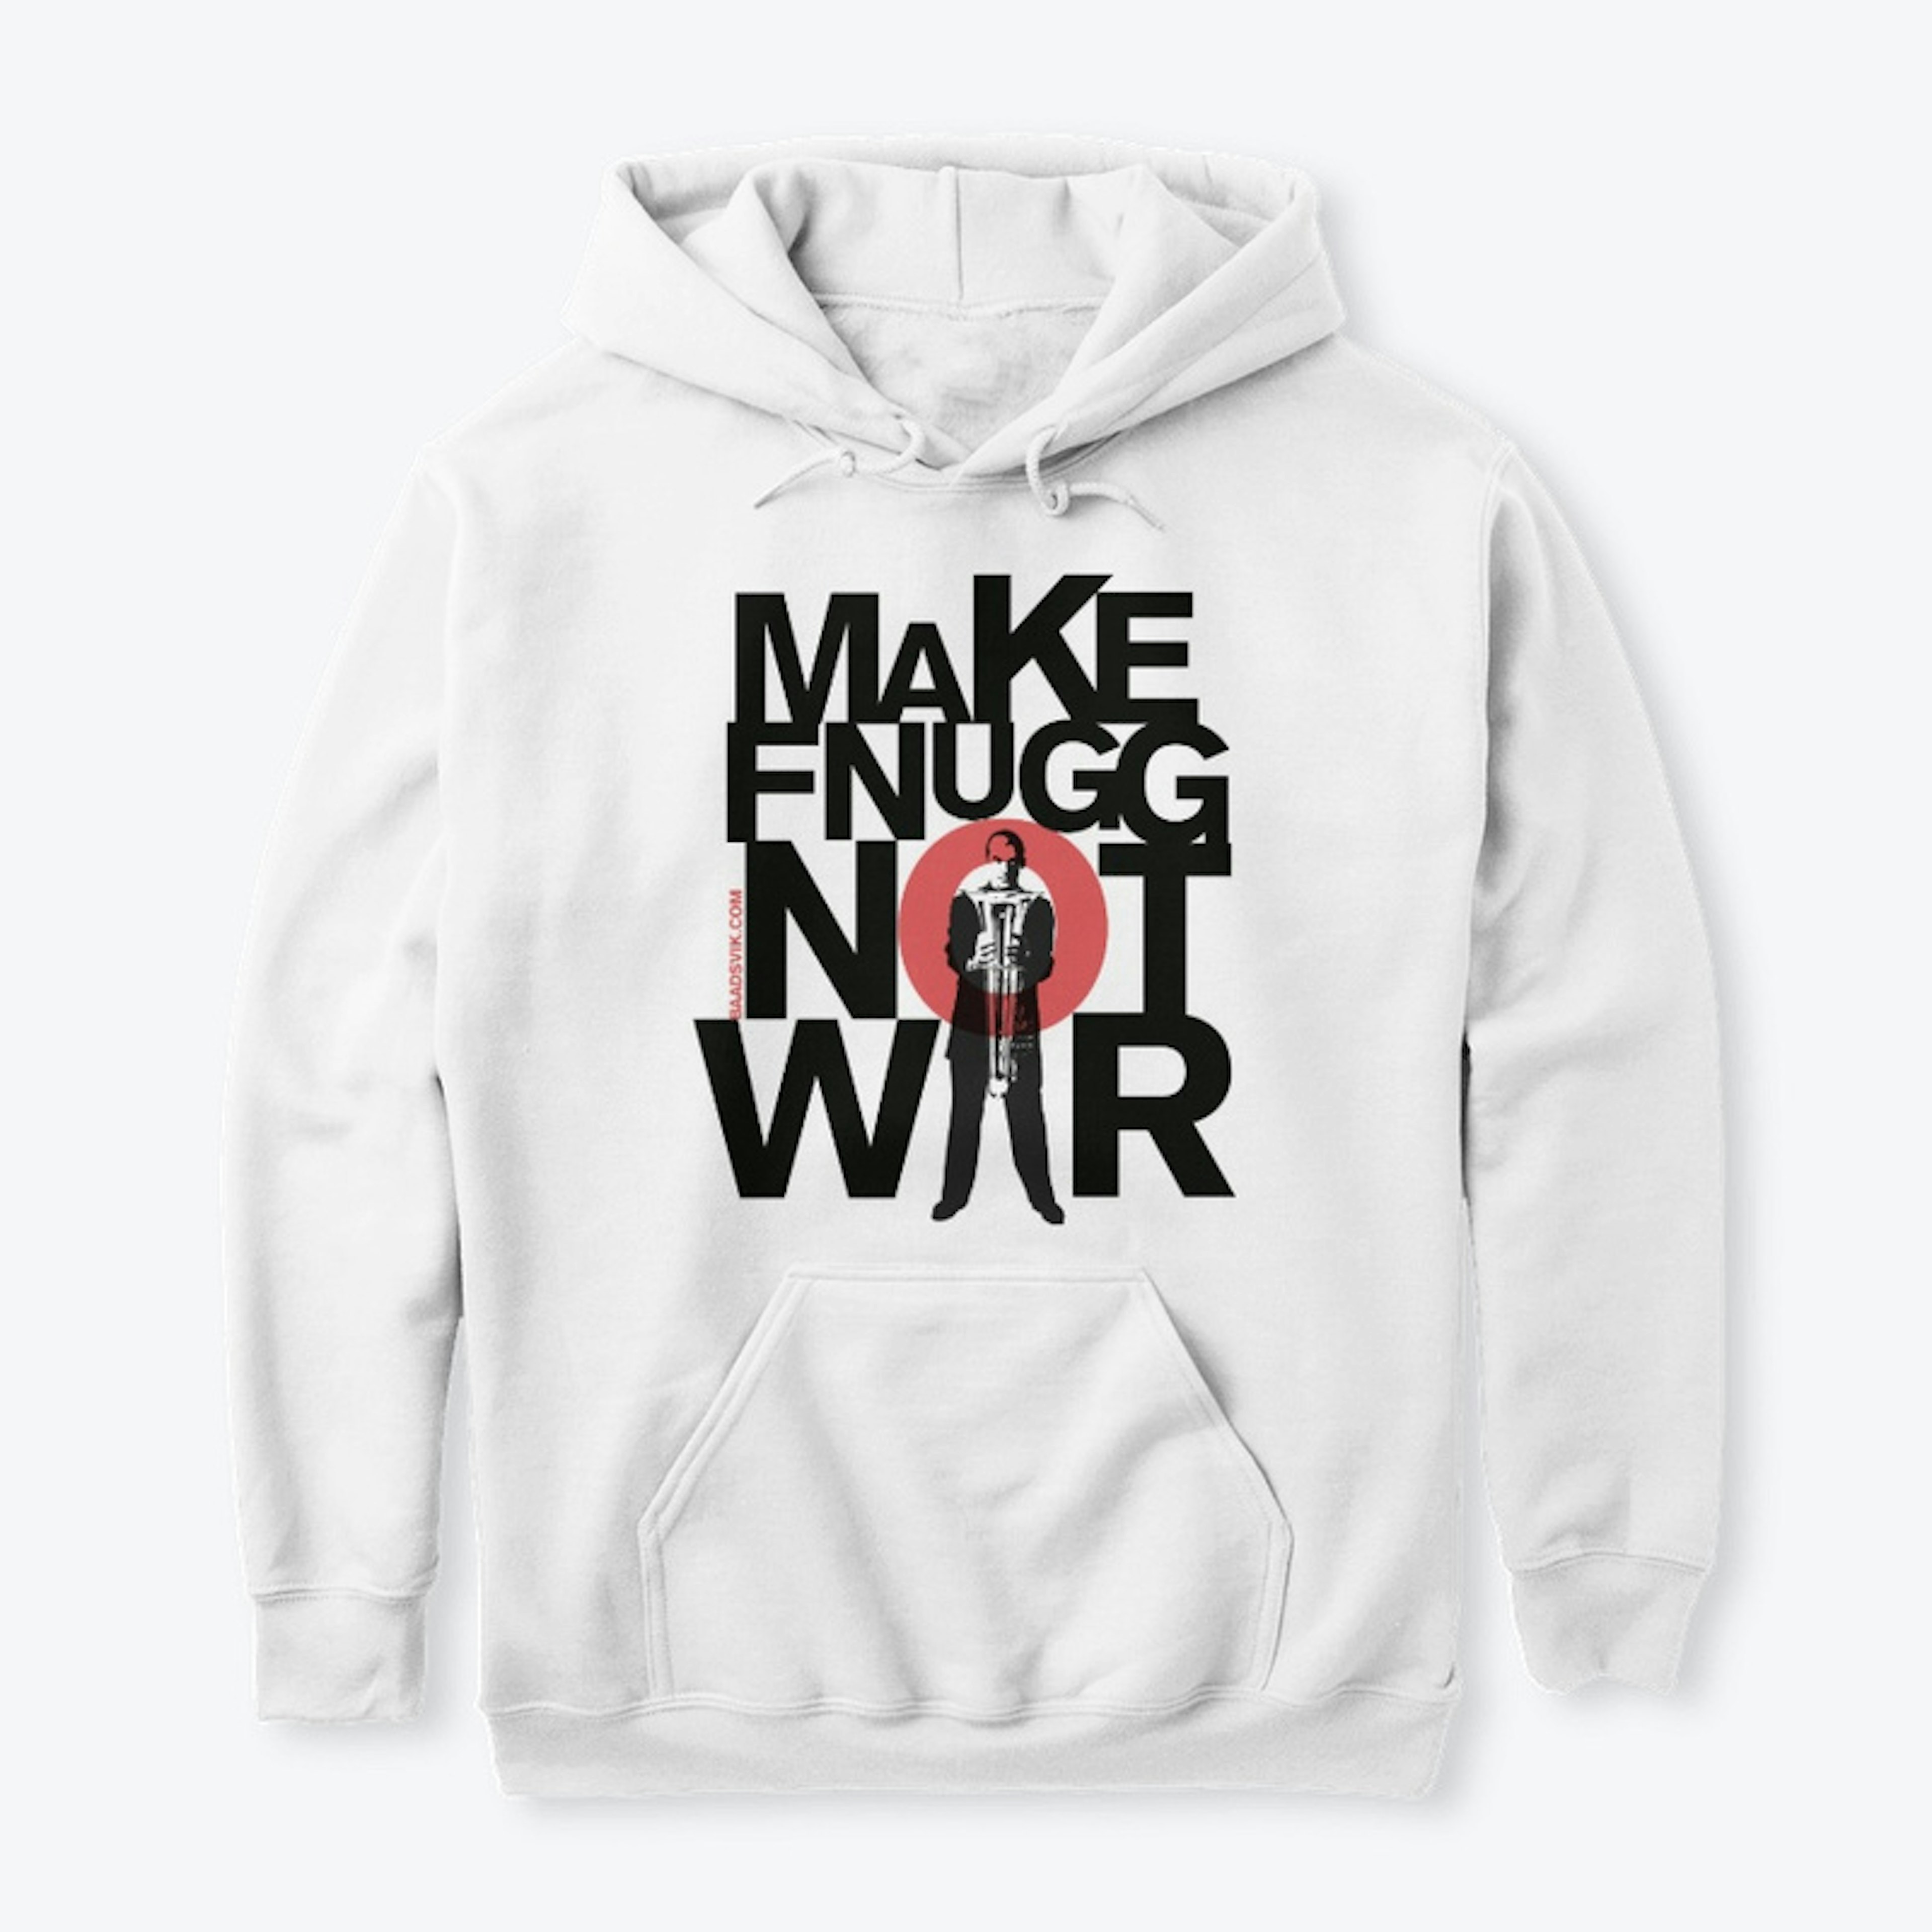 Make Fnugg Not War 